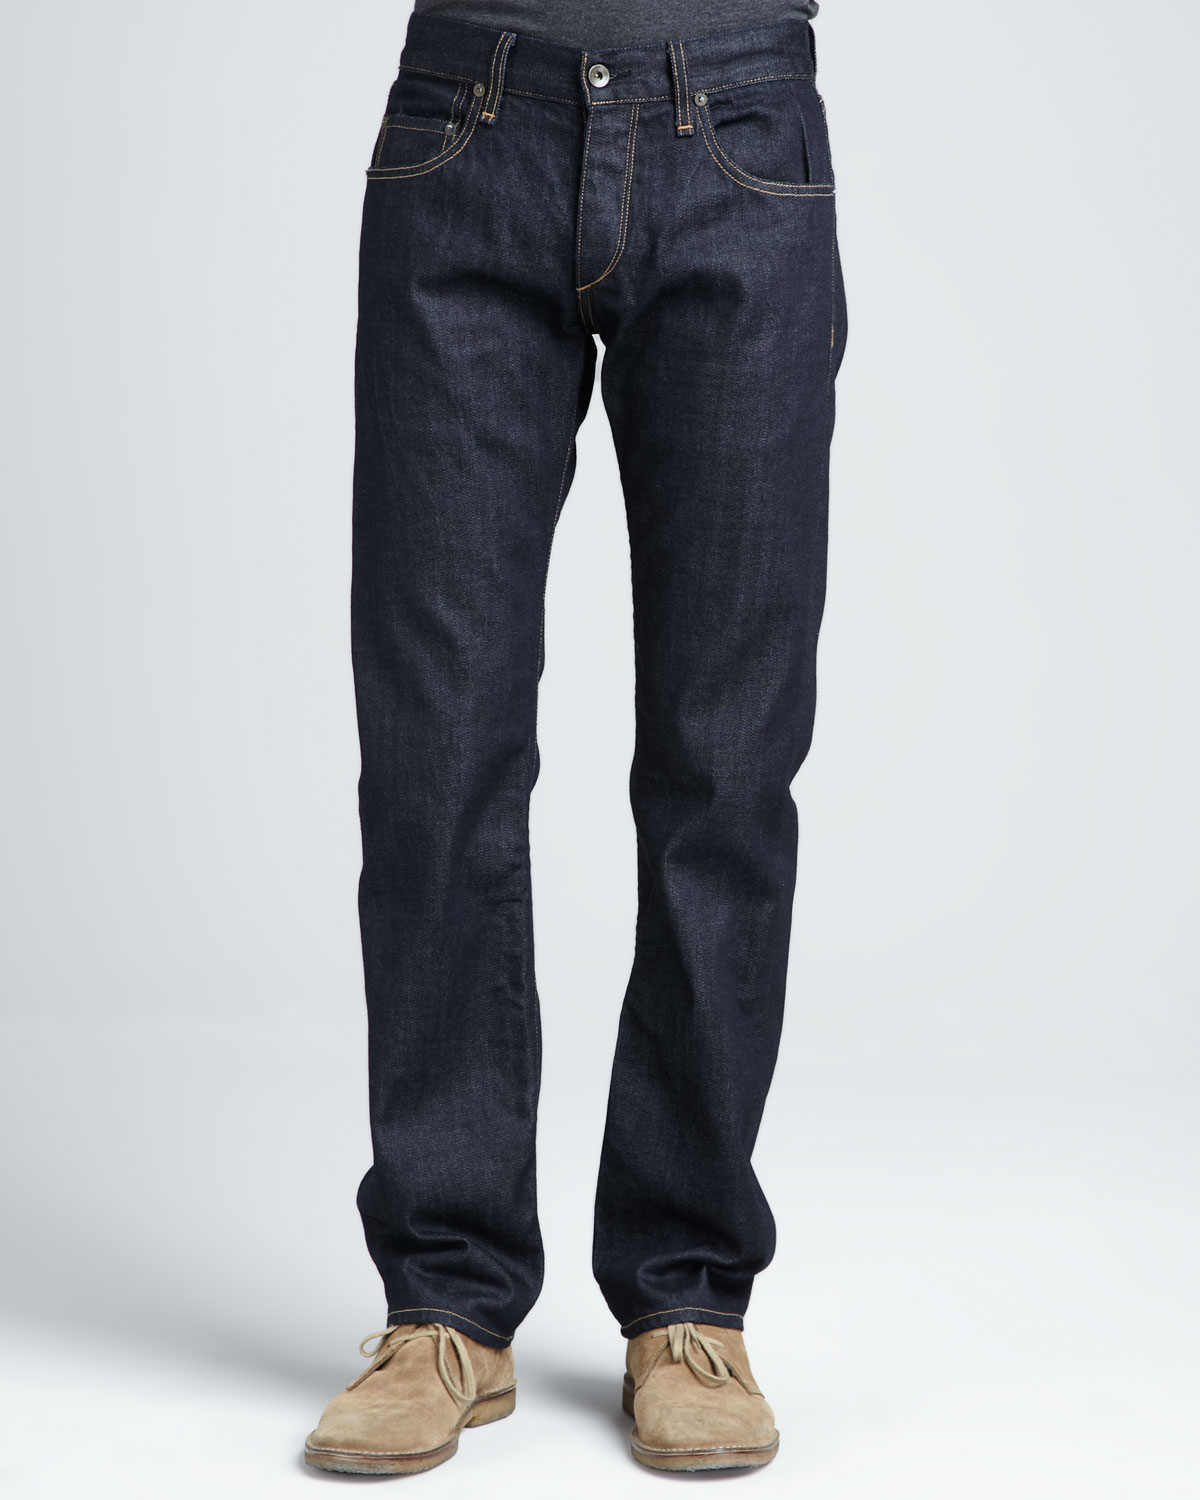 Lyst - Rag & Bone Dark-rinse Selvedge Jeans in Blue for Men